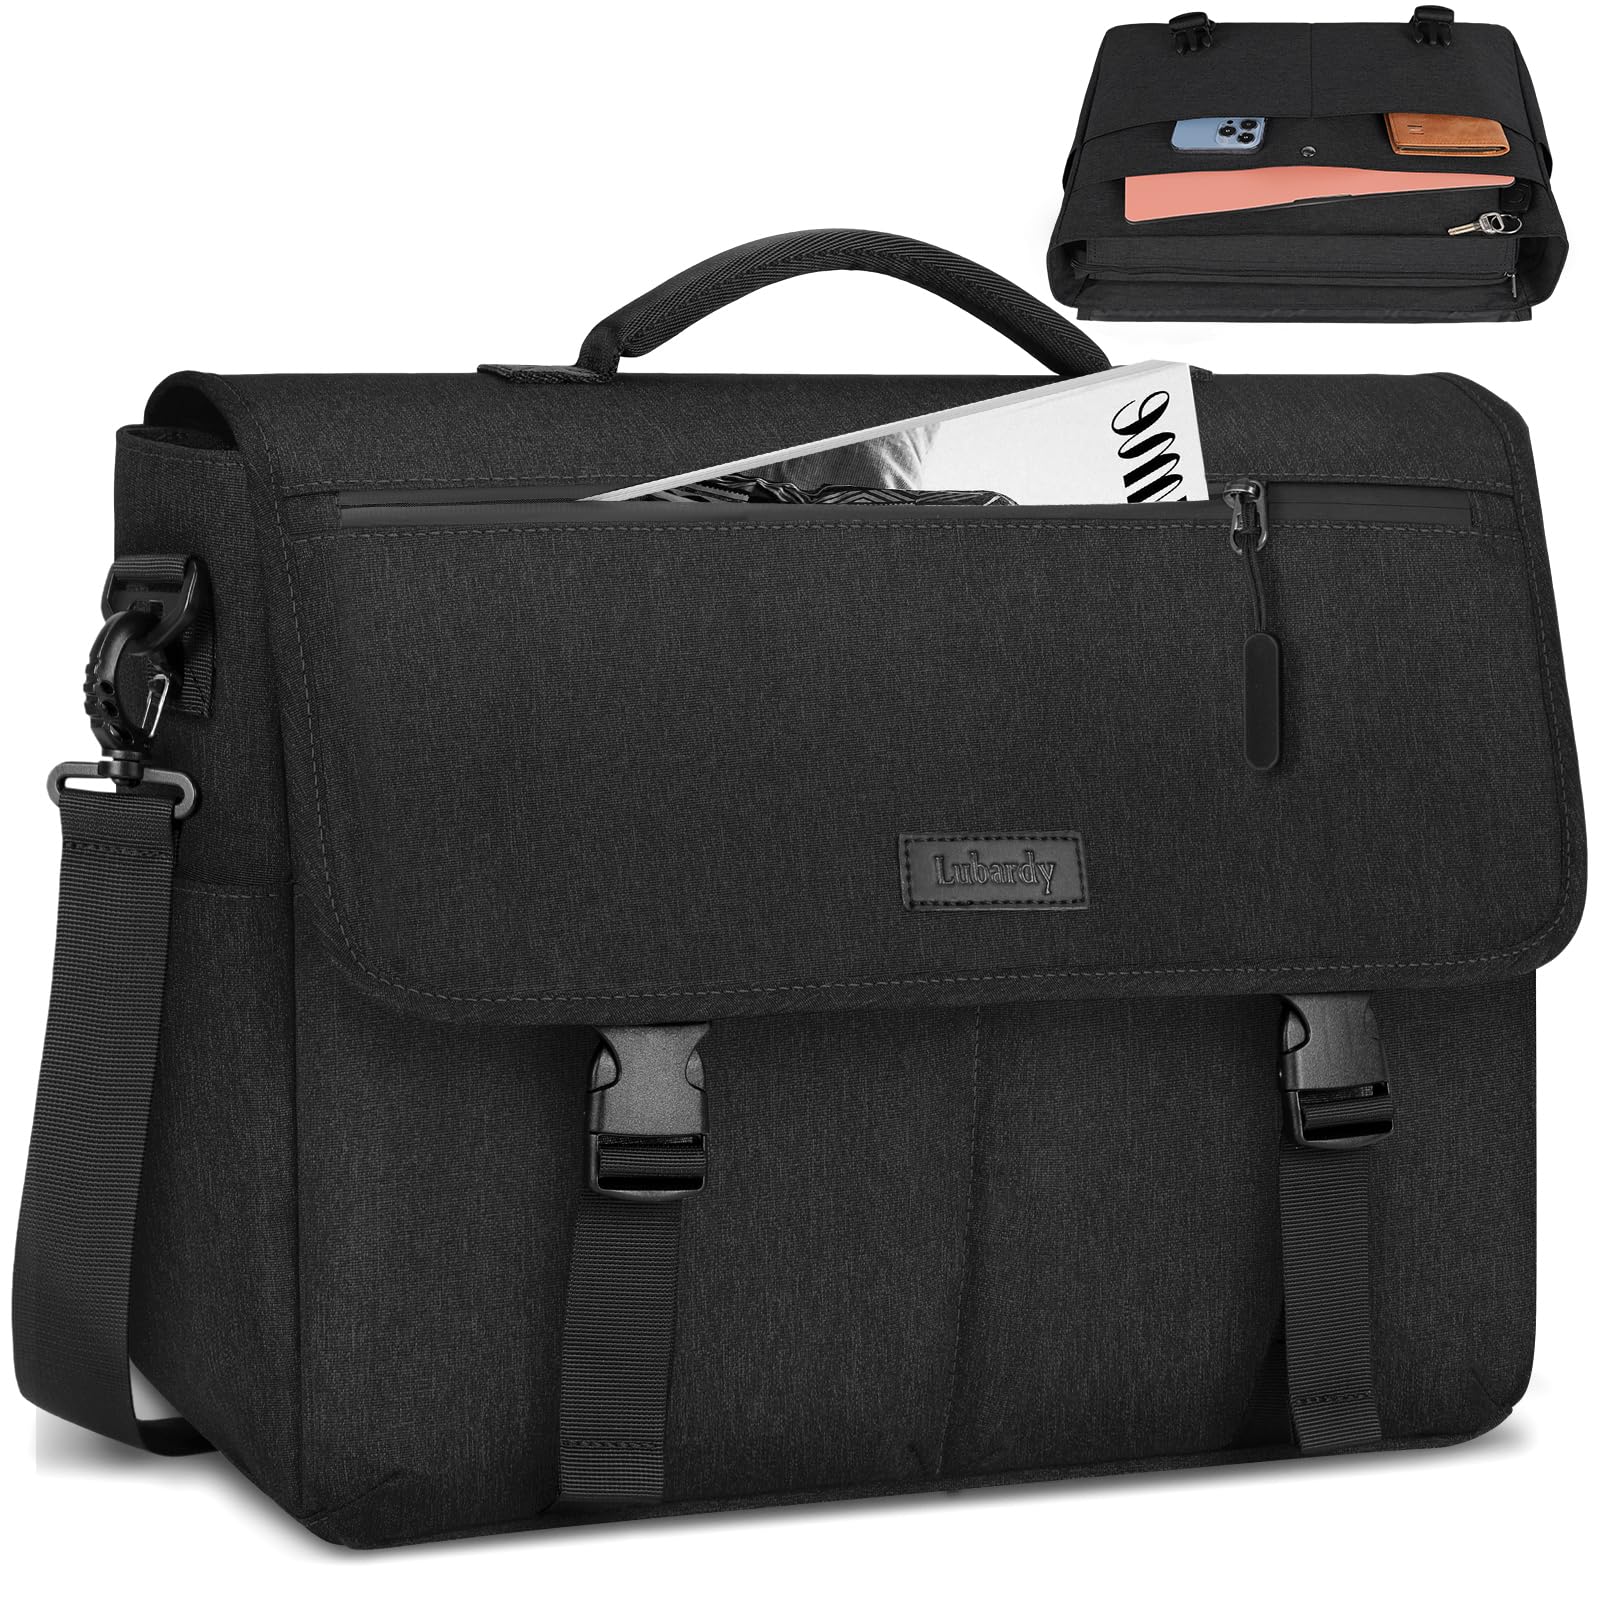 Lubardy Laptop Messenger Bag for Men 15.6 Inch Laptop Bag Waterproof Laptop Briefcase Large Lightweight Computer Bag Satchel Shoulder Bags for Work Business Travel College, Black